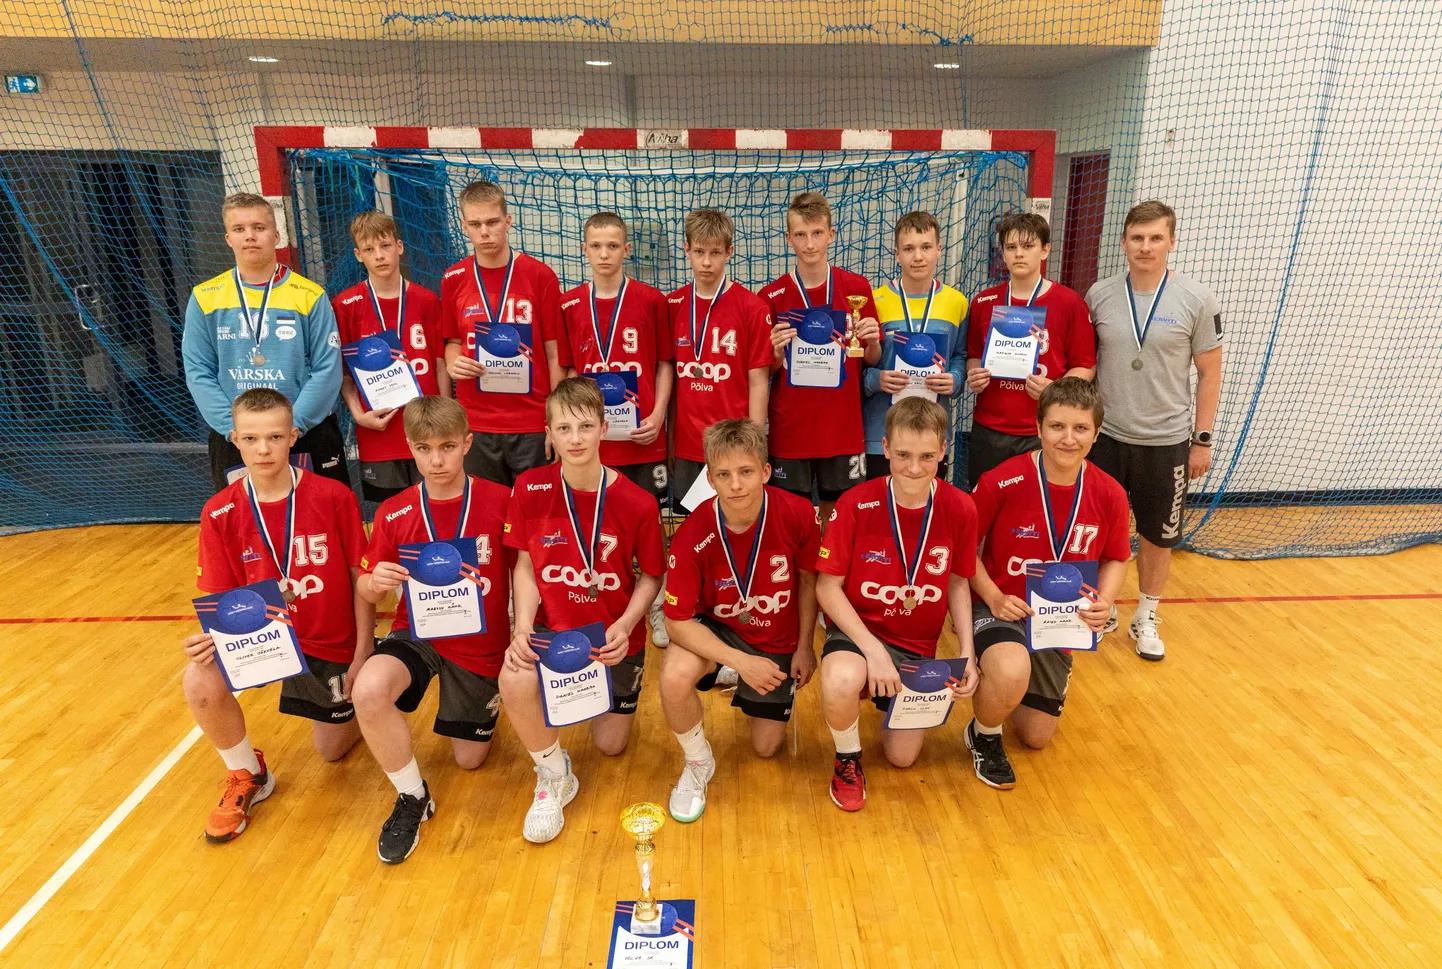 Käsipalli Eesti meistrivõistluste noormeeste C vanuseklassis said teise koha Põlva käsipalliklubi / Põlva spordikooli poisid.